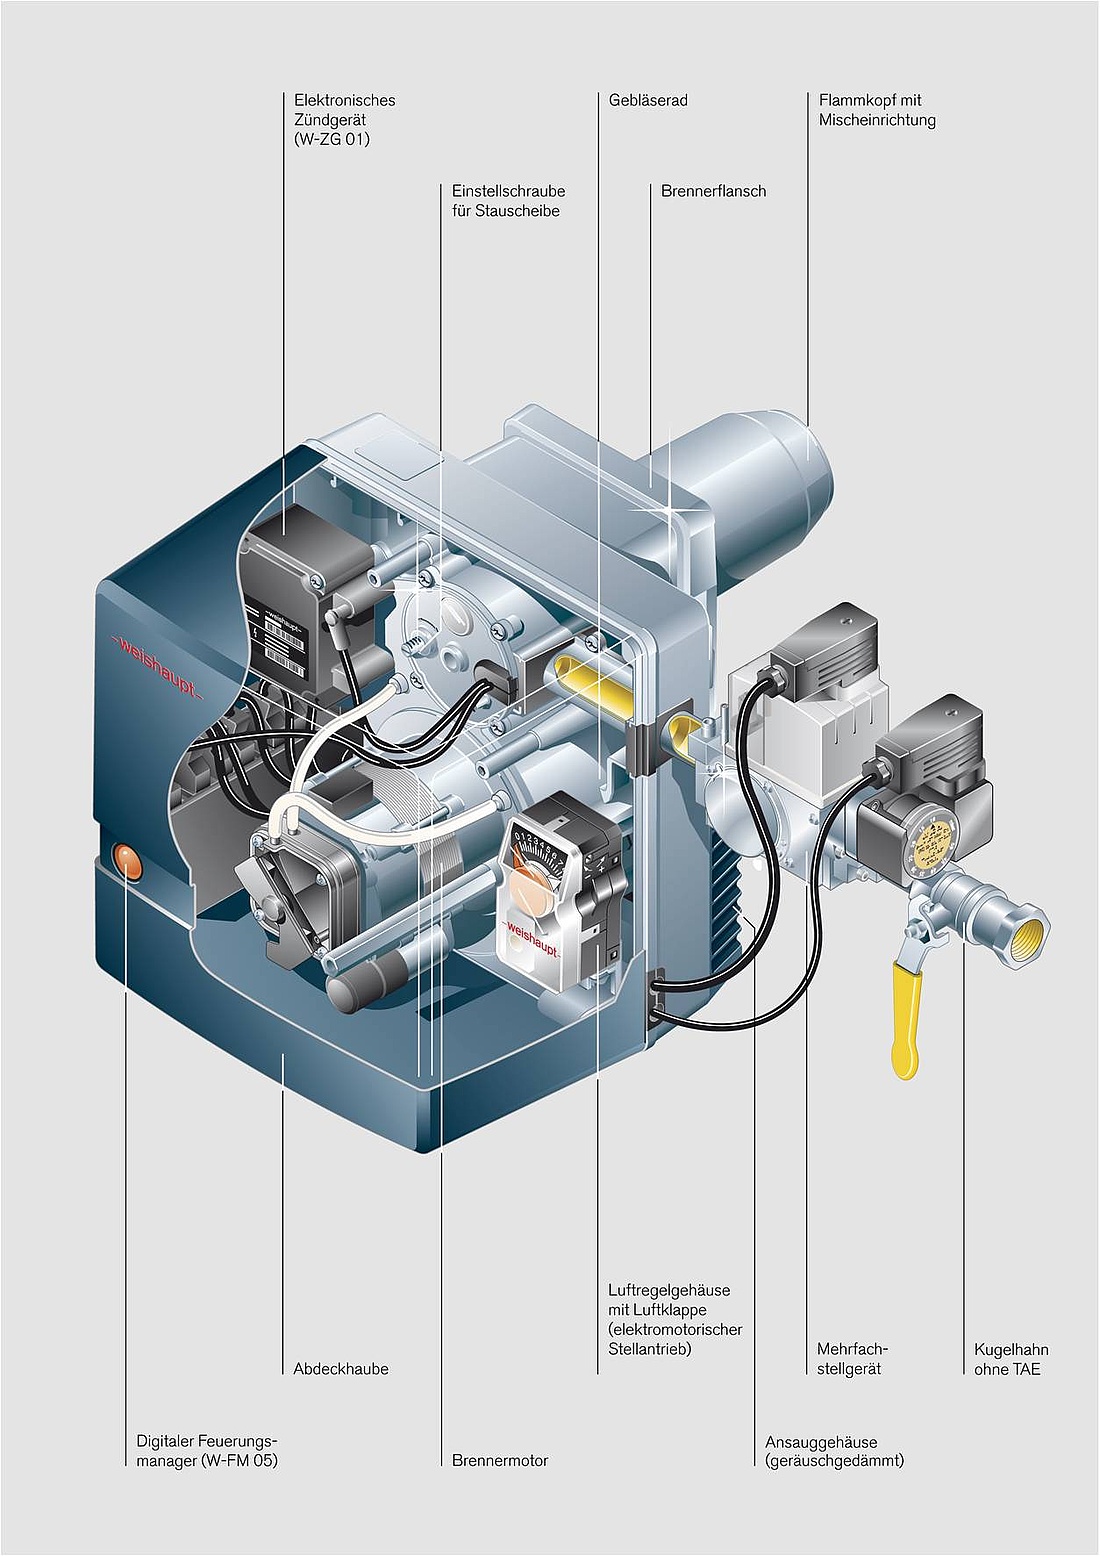 Schnittbild eines W-Brenners für Gas (WG5) mit digitalem Feuerungsmanagement mit einer Leistung von 12,5 bis 50 kW. (Abb.: Max Weishaupt GmbH)